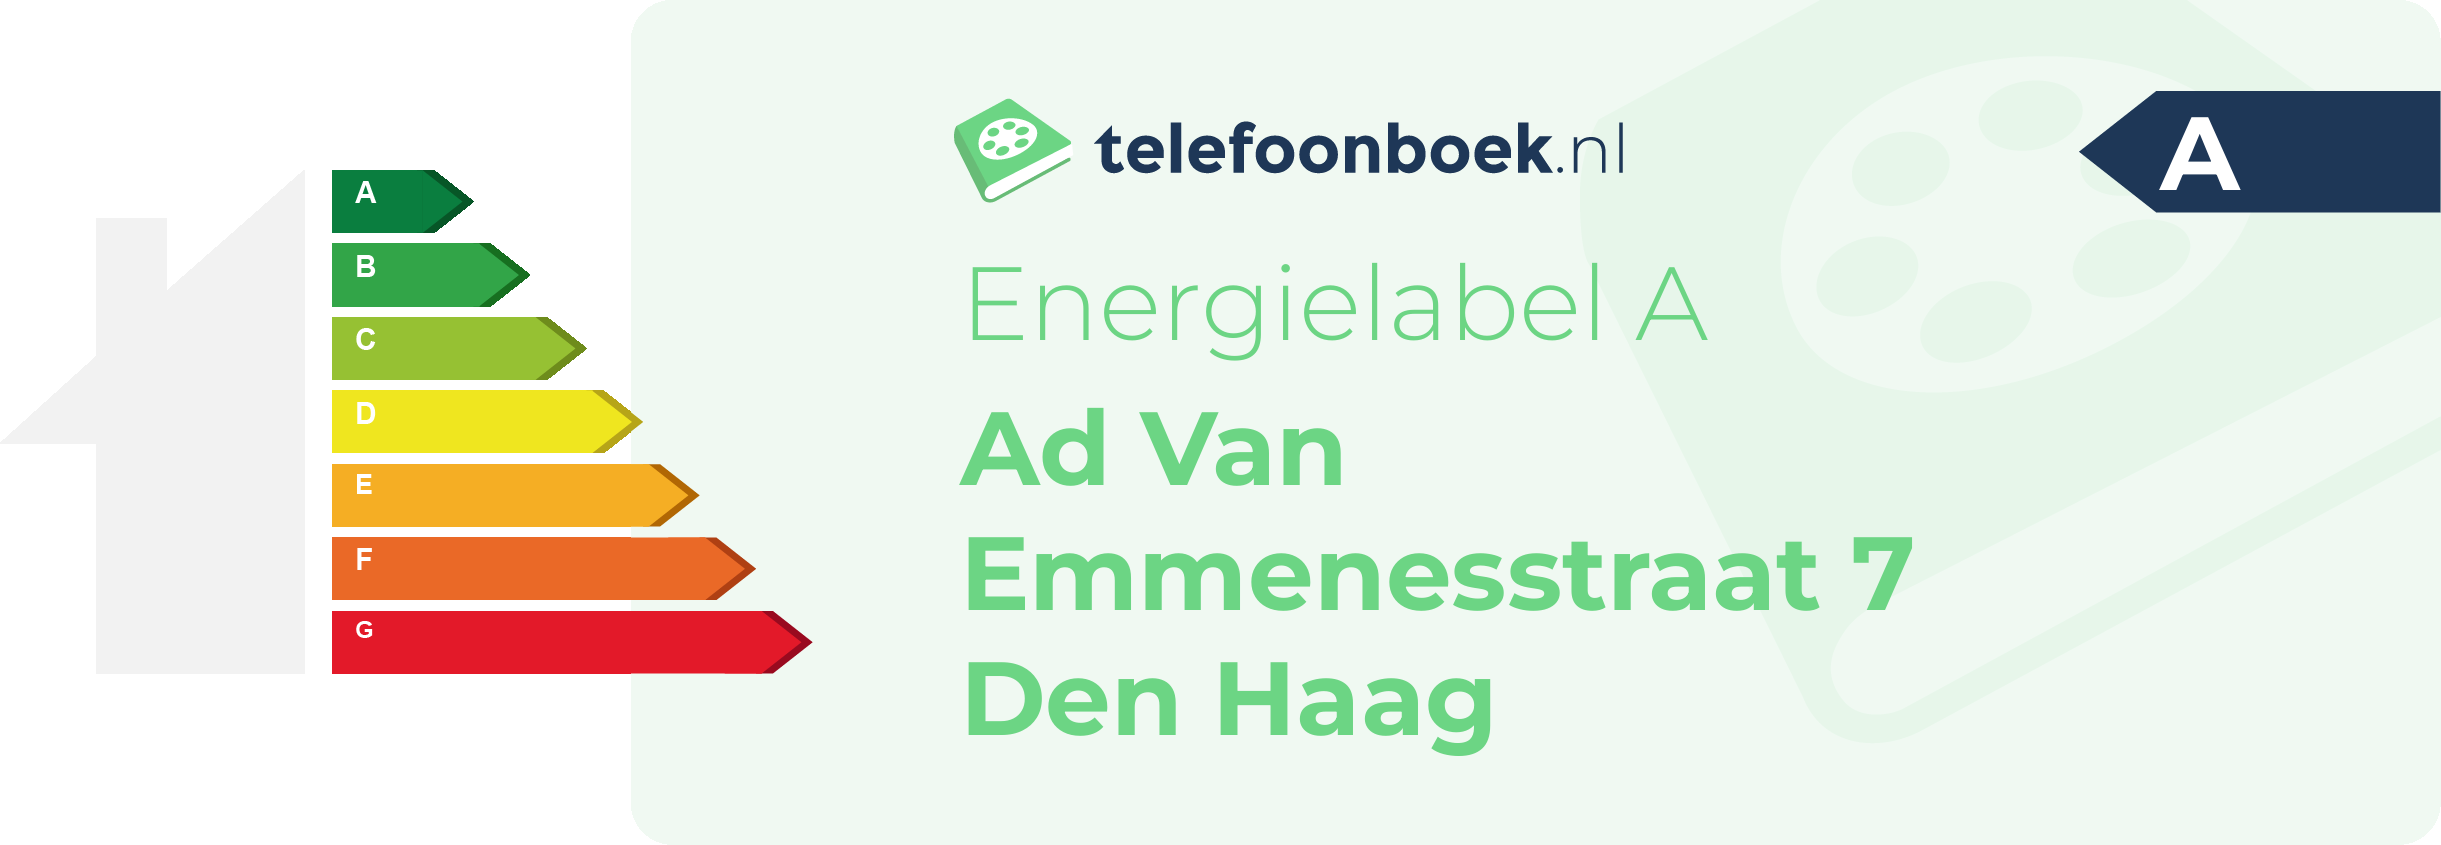 Energielabel Ad Van Emmenesstraat 7 Den Haag